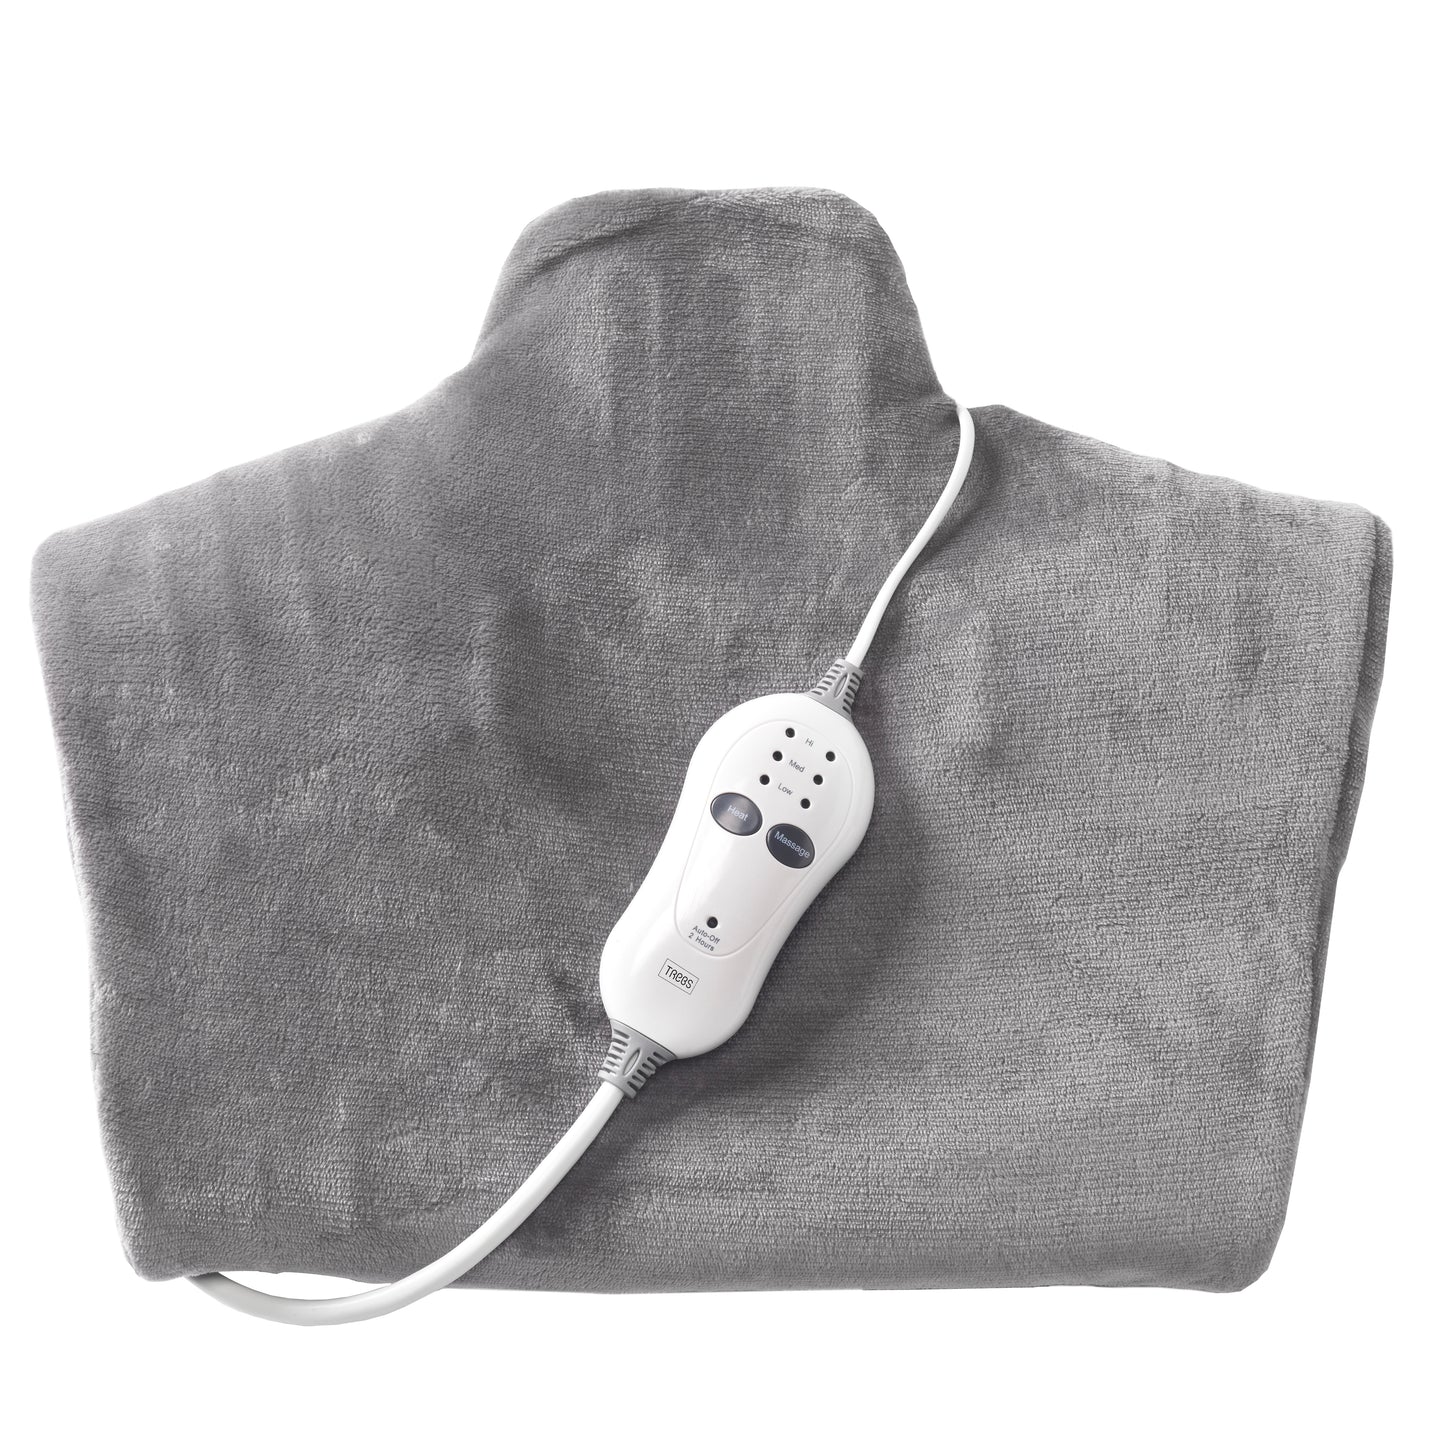 Trebs 99360 - Elektrische 2-in-1 Warmte en Massagekussen / Comfortheat Fleece